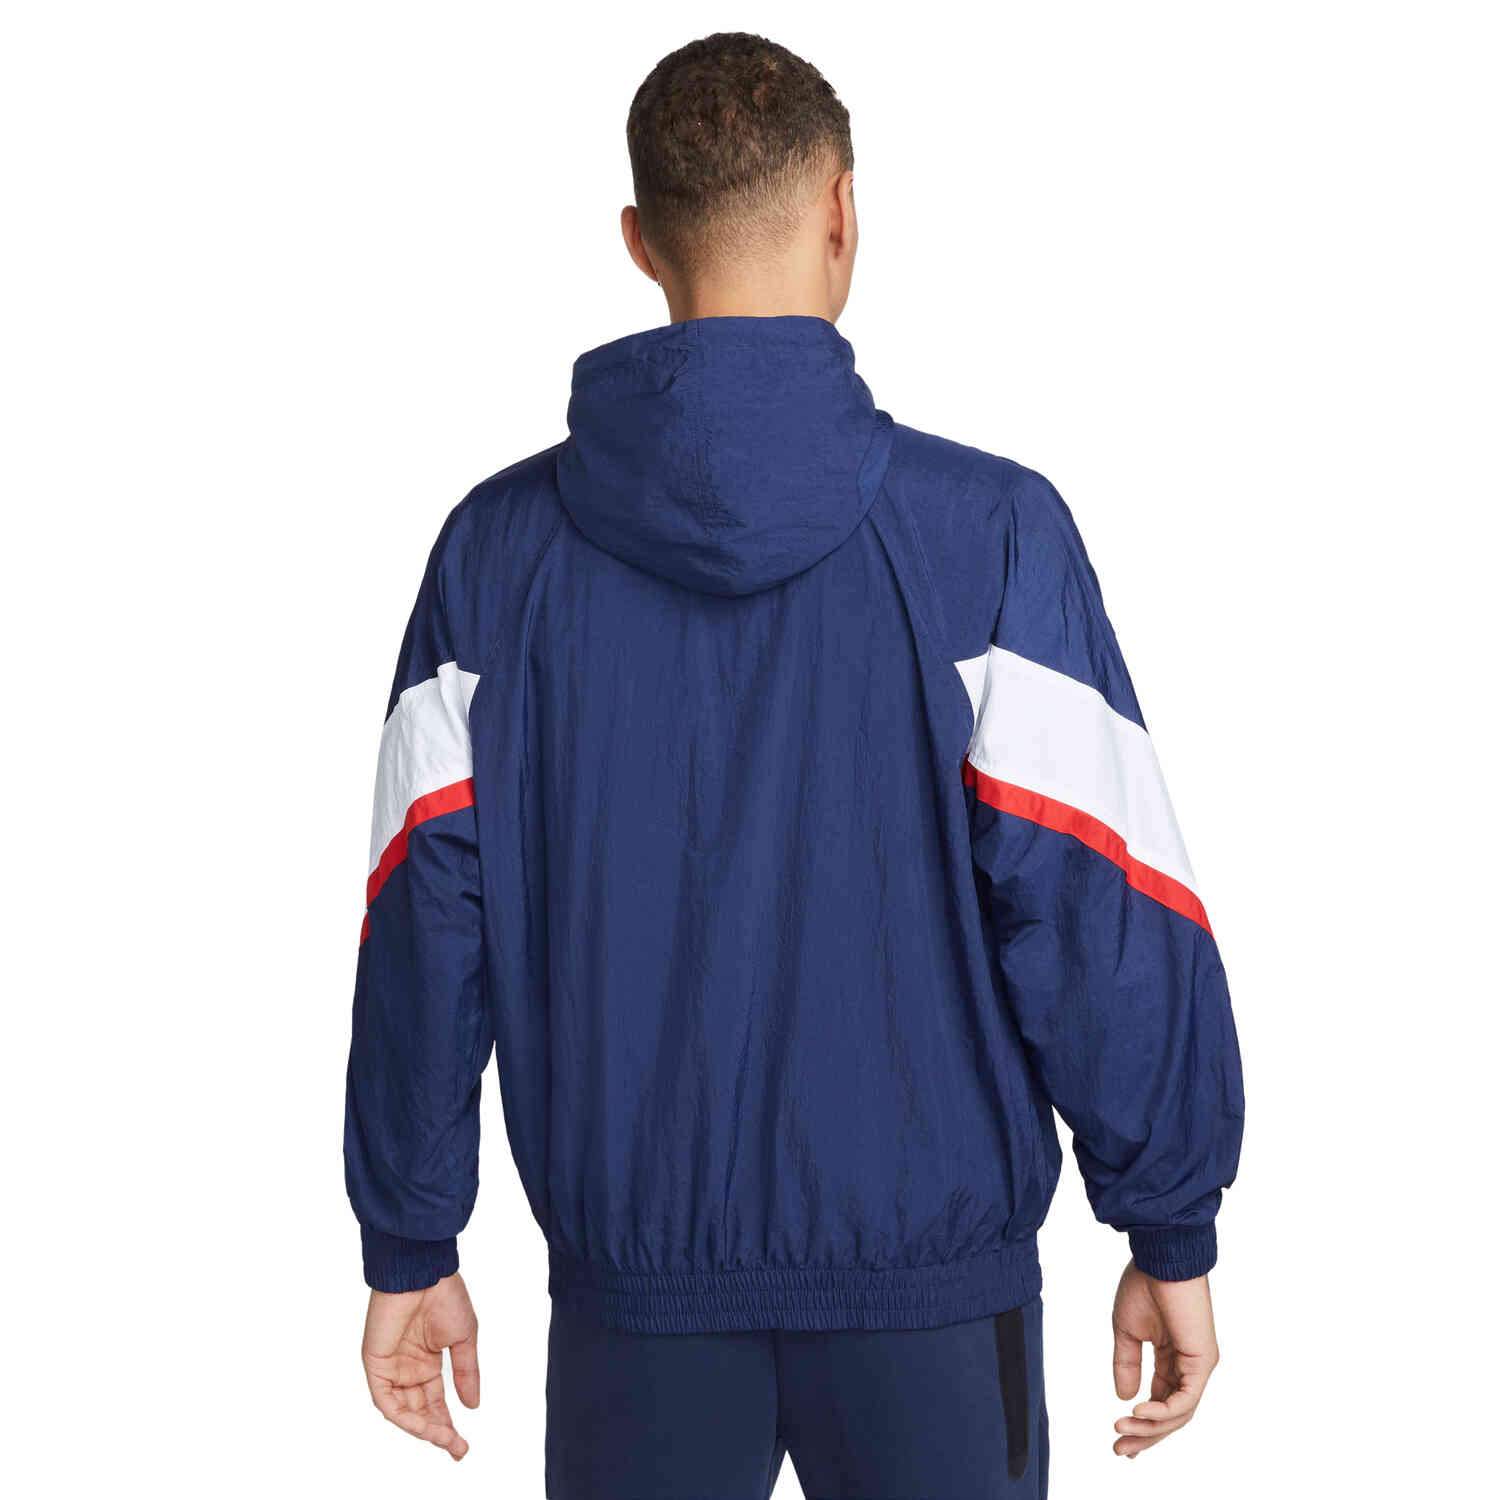 Nike PSG Anthem Lifestyle Jacket - Midnight Navy/White/University Red/White  - Soccer Master